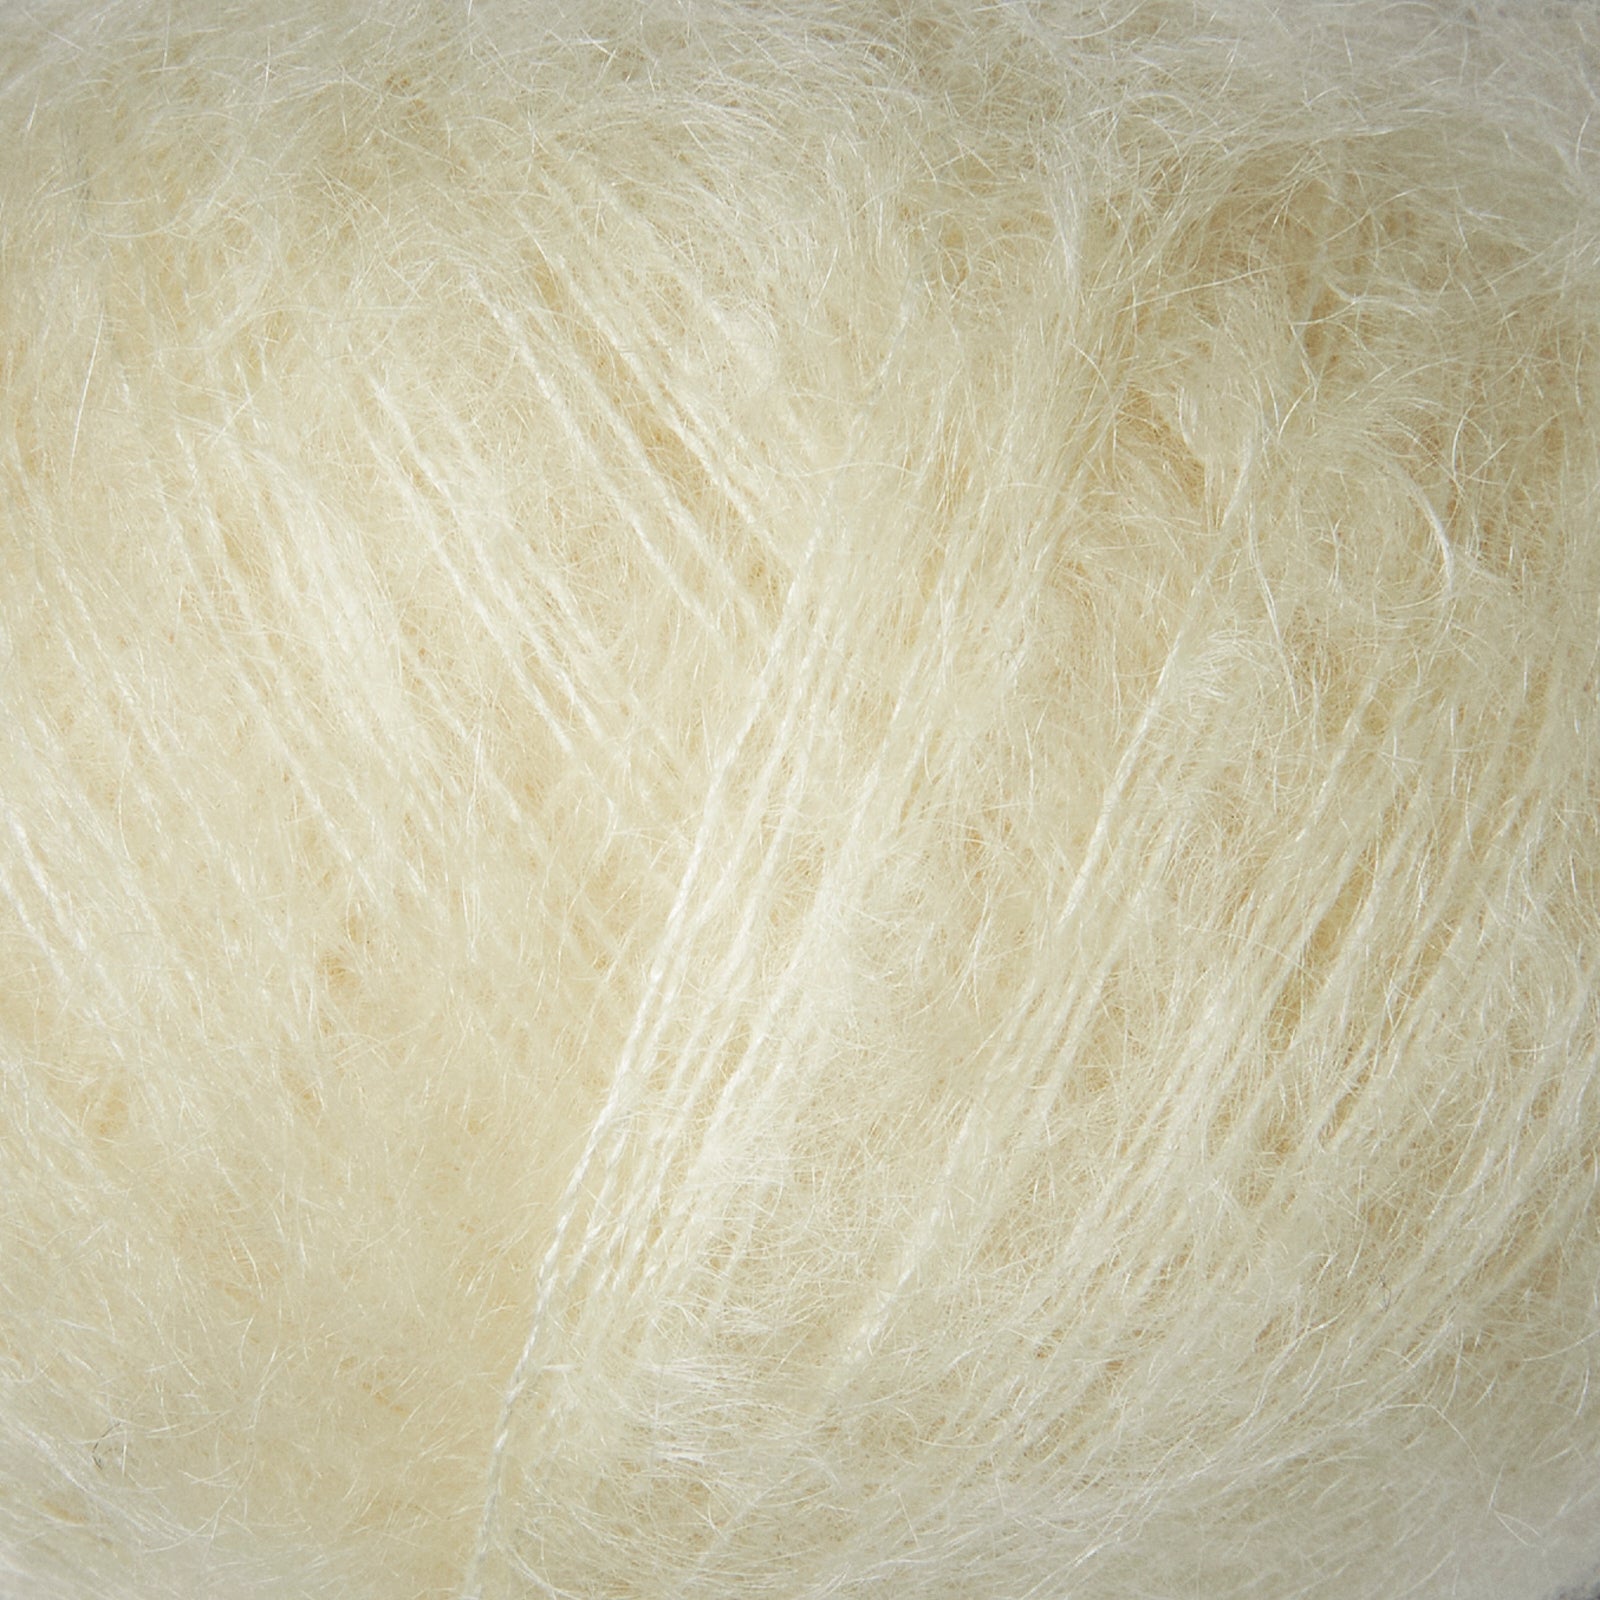 Knitting for Olive Soft Silk Mohair - Elderflower